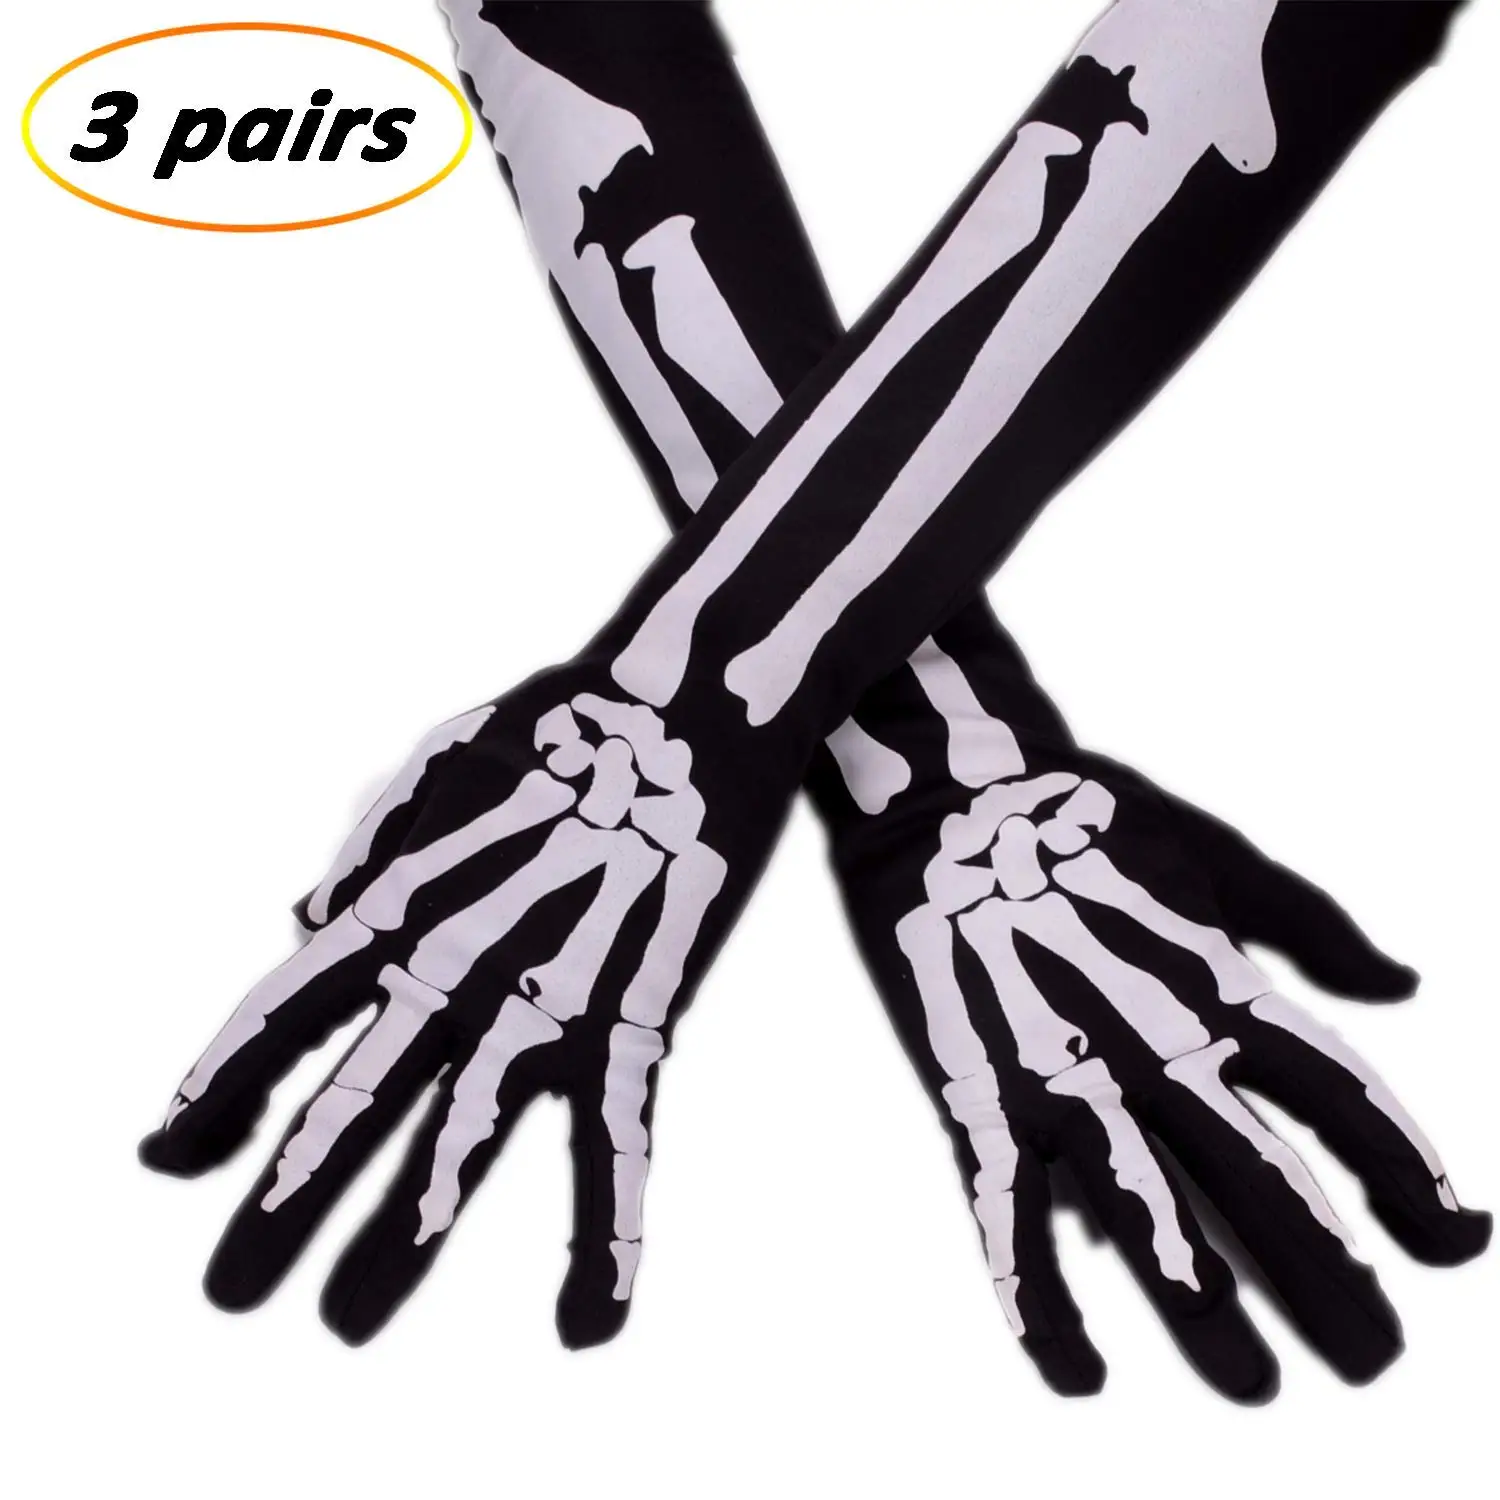 Cheap Skeleton Driving Gloves, find Skeleton Driving Gloves deals on ...